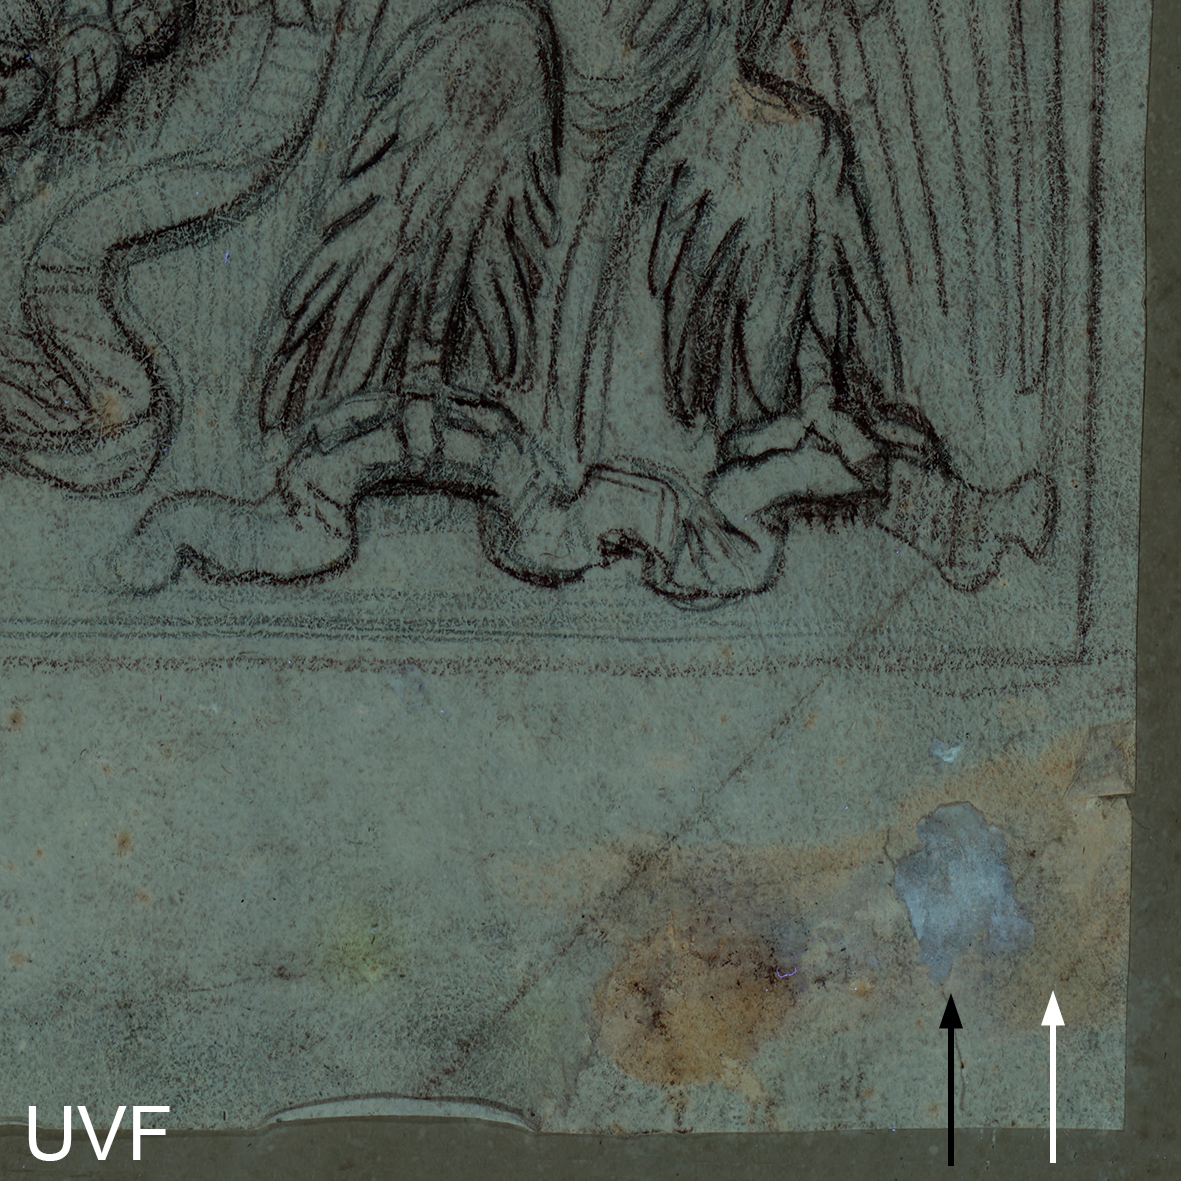 Abbildung eines Klebepunktes in UVF